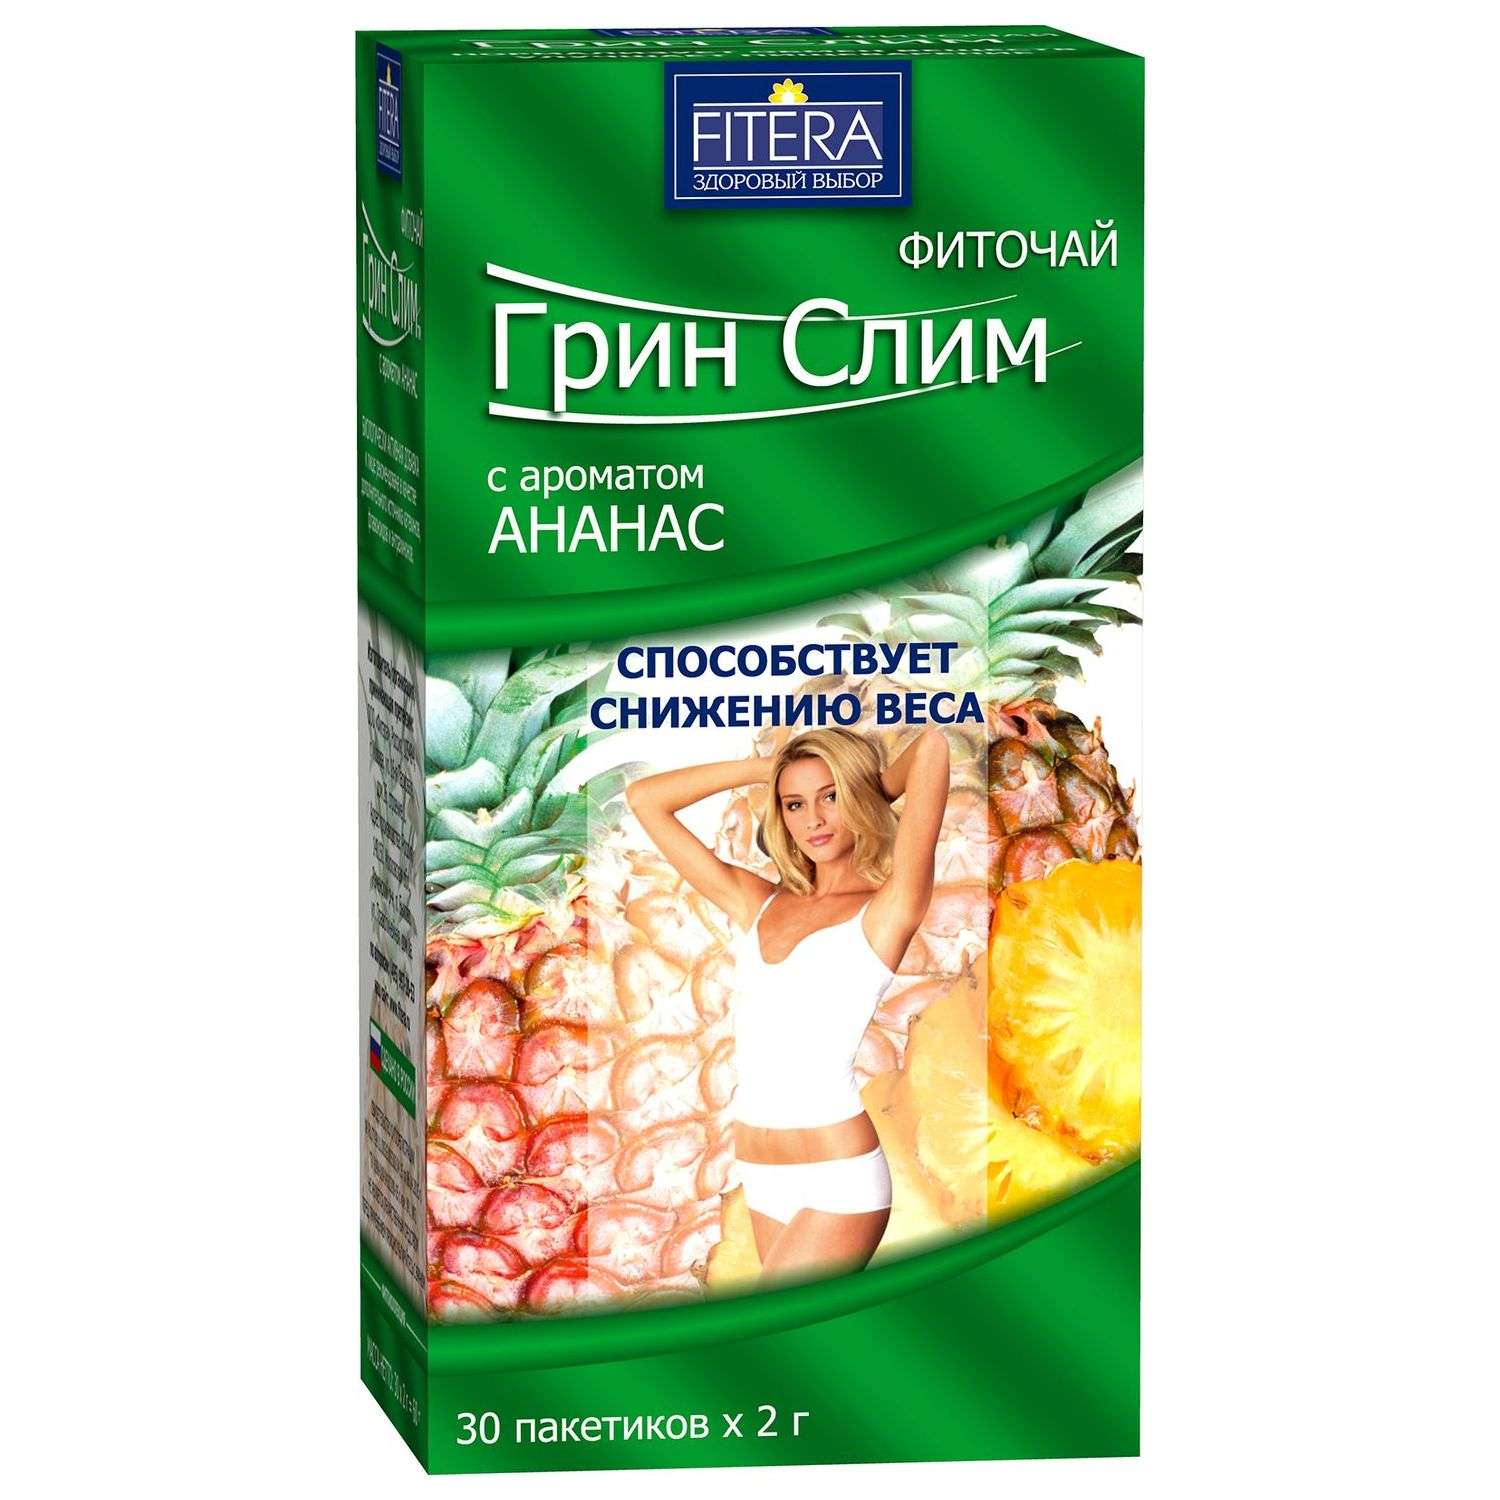 Фиточай Fitera Грин Слим аромат ананаса 30пакетиков - фото 1